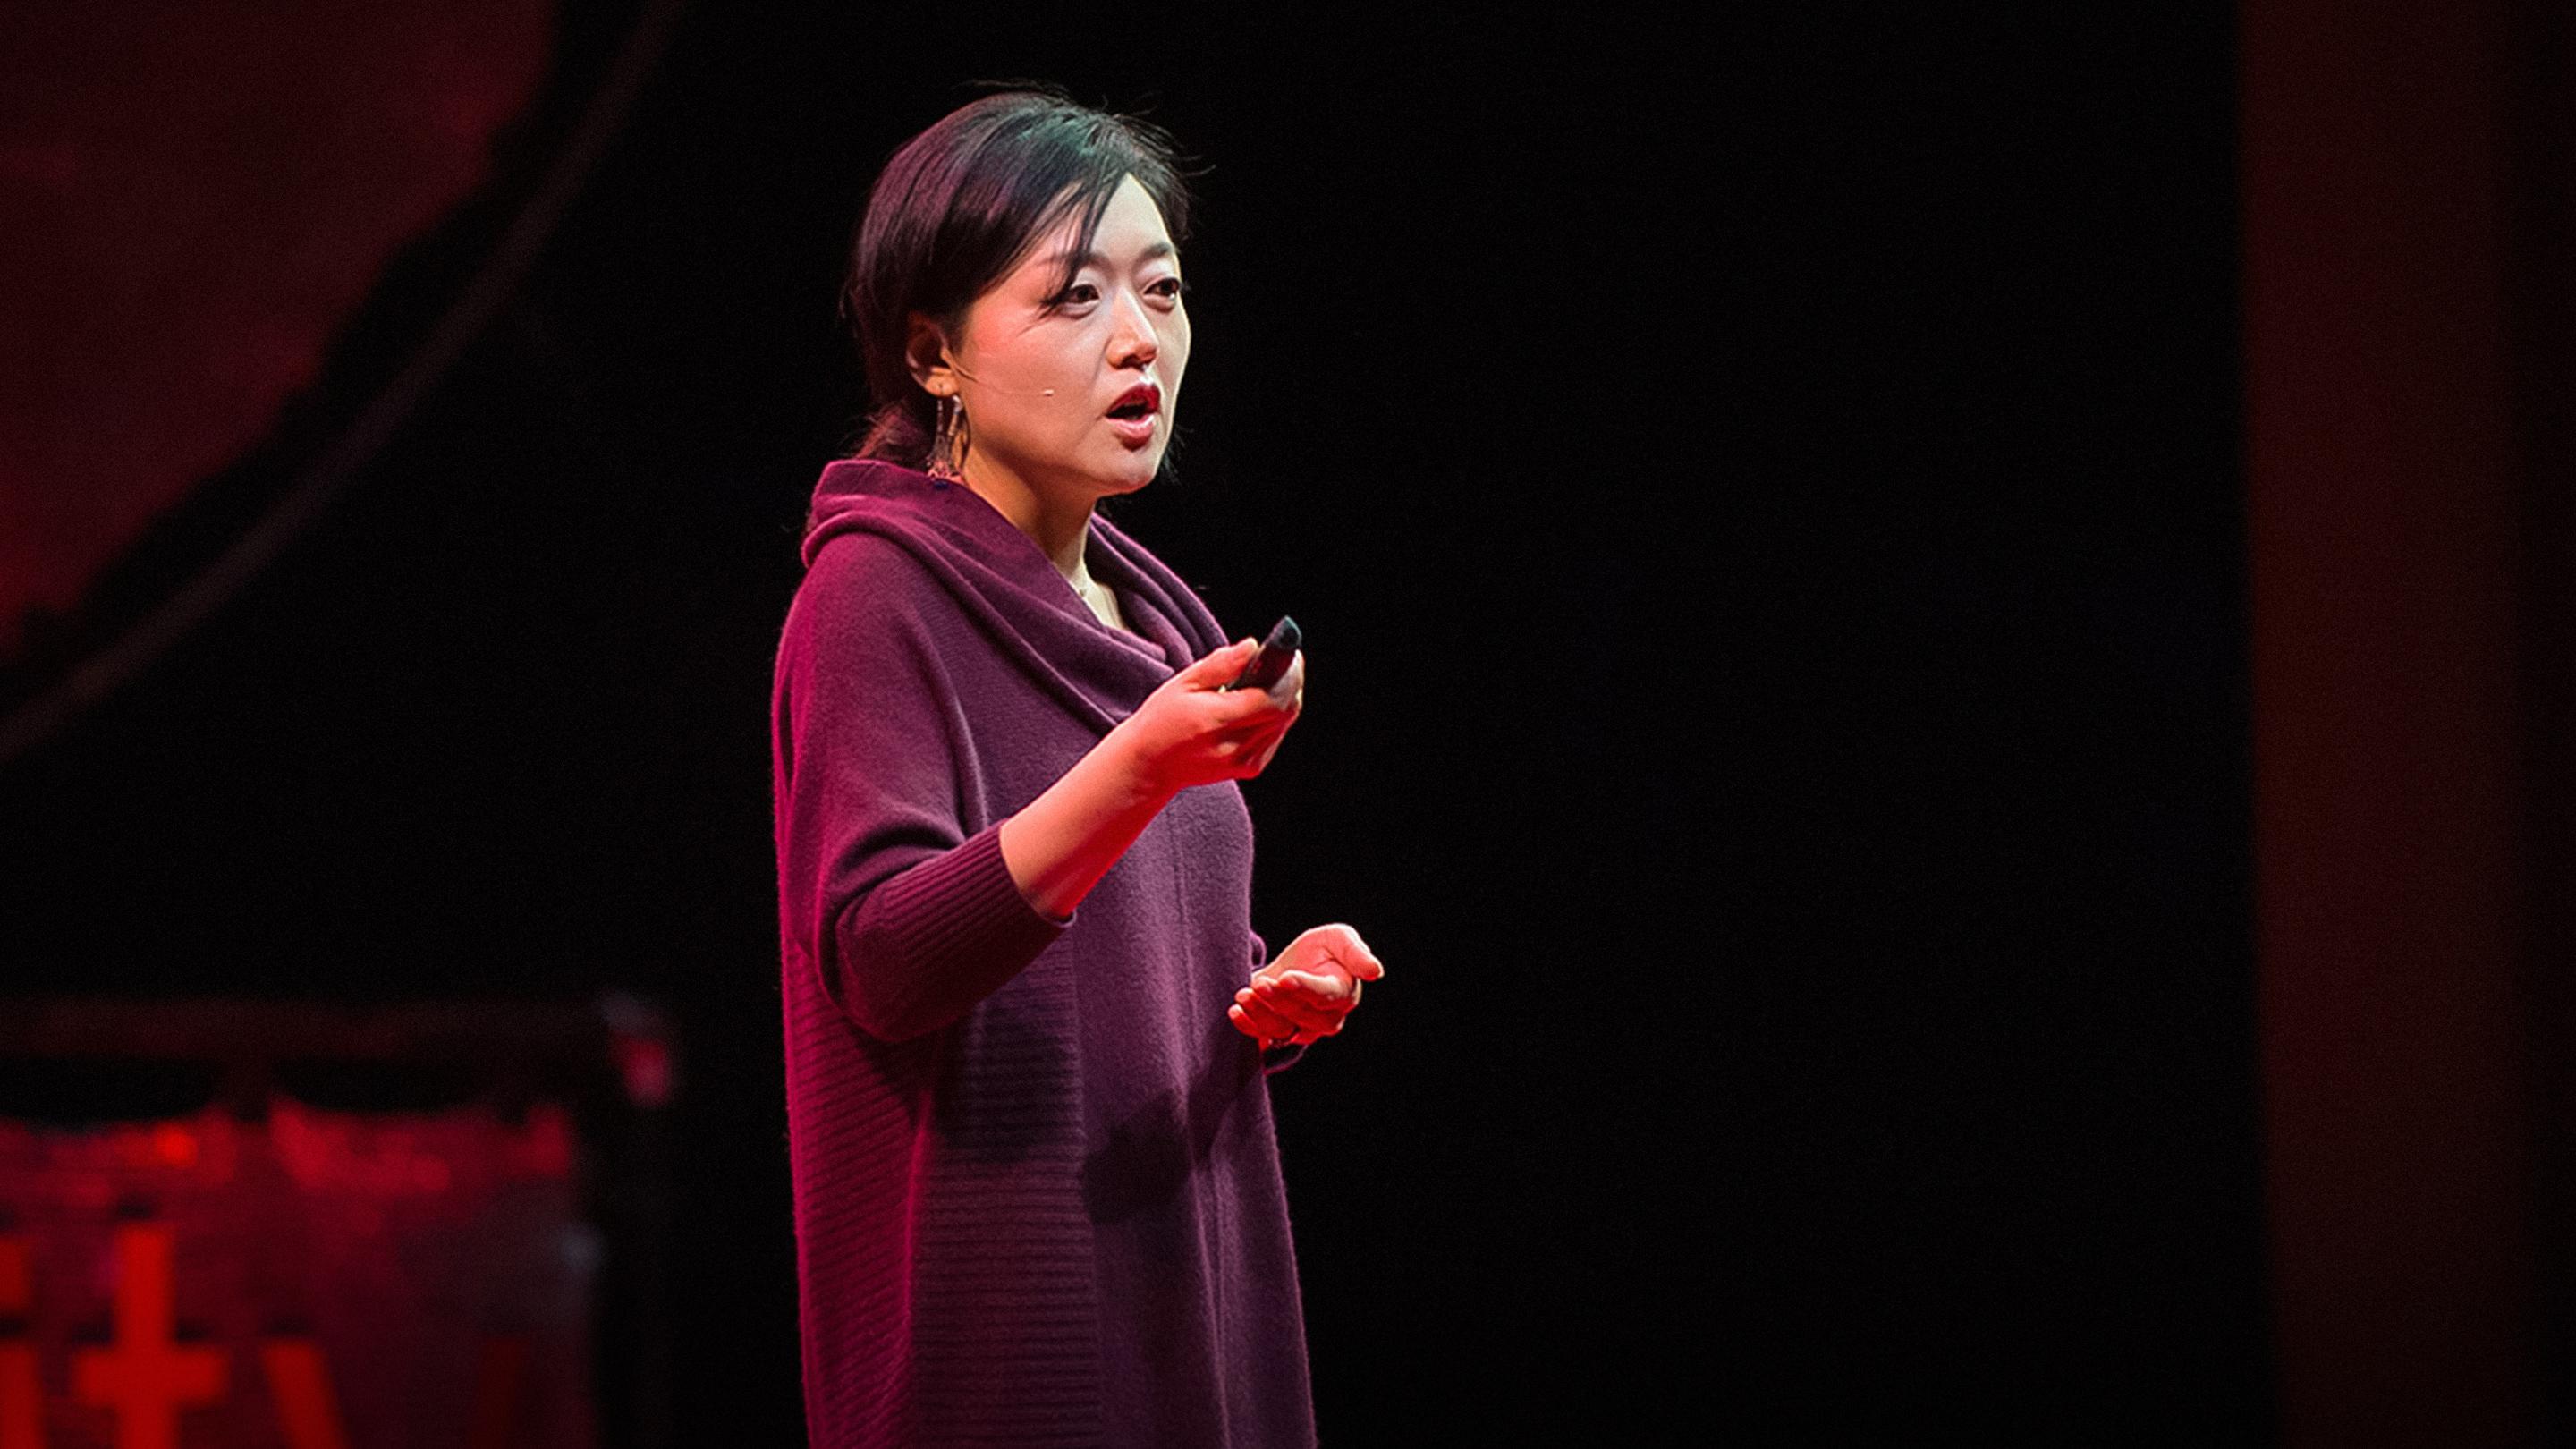 Ce que j'ai appris en tant que prisonnière en Corée du Nord | Euna Lee